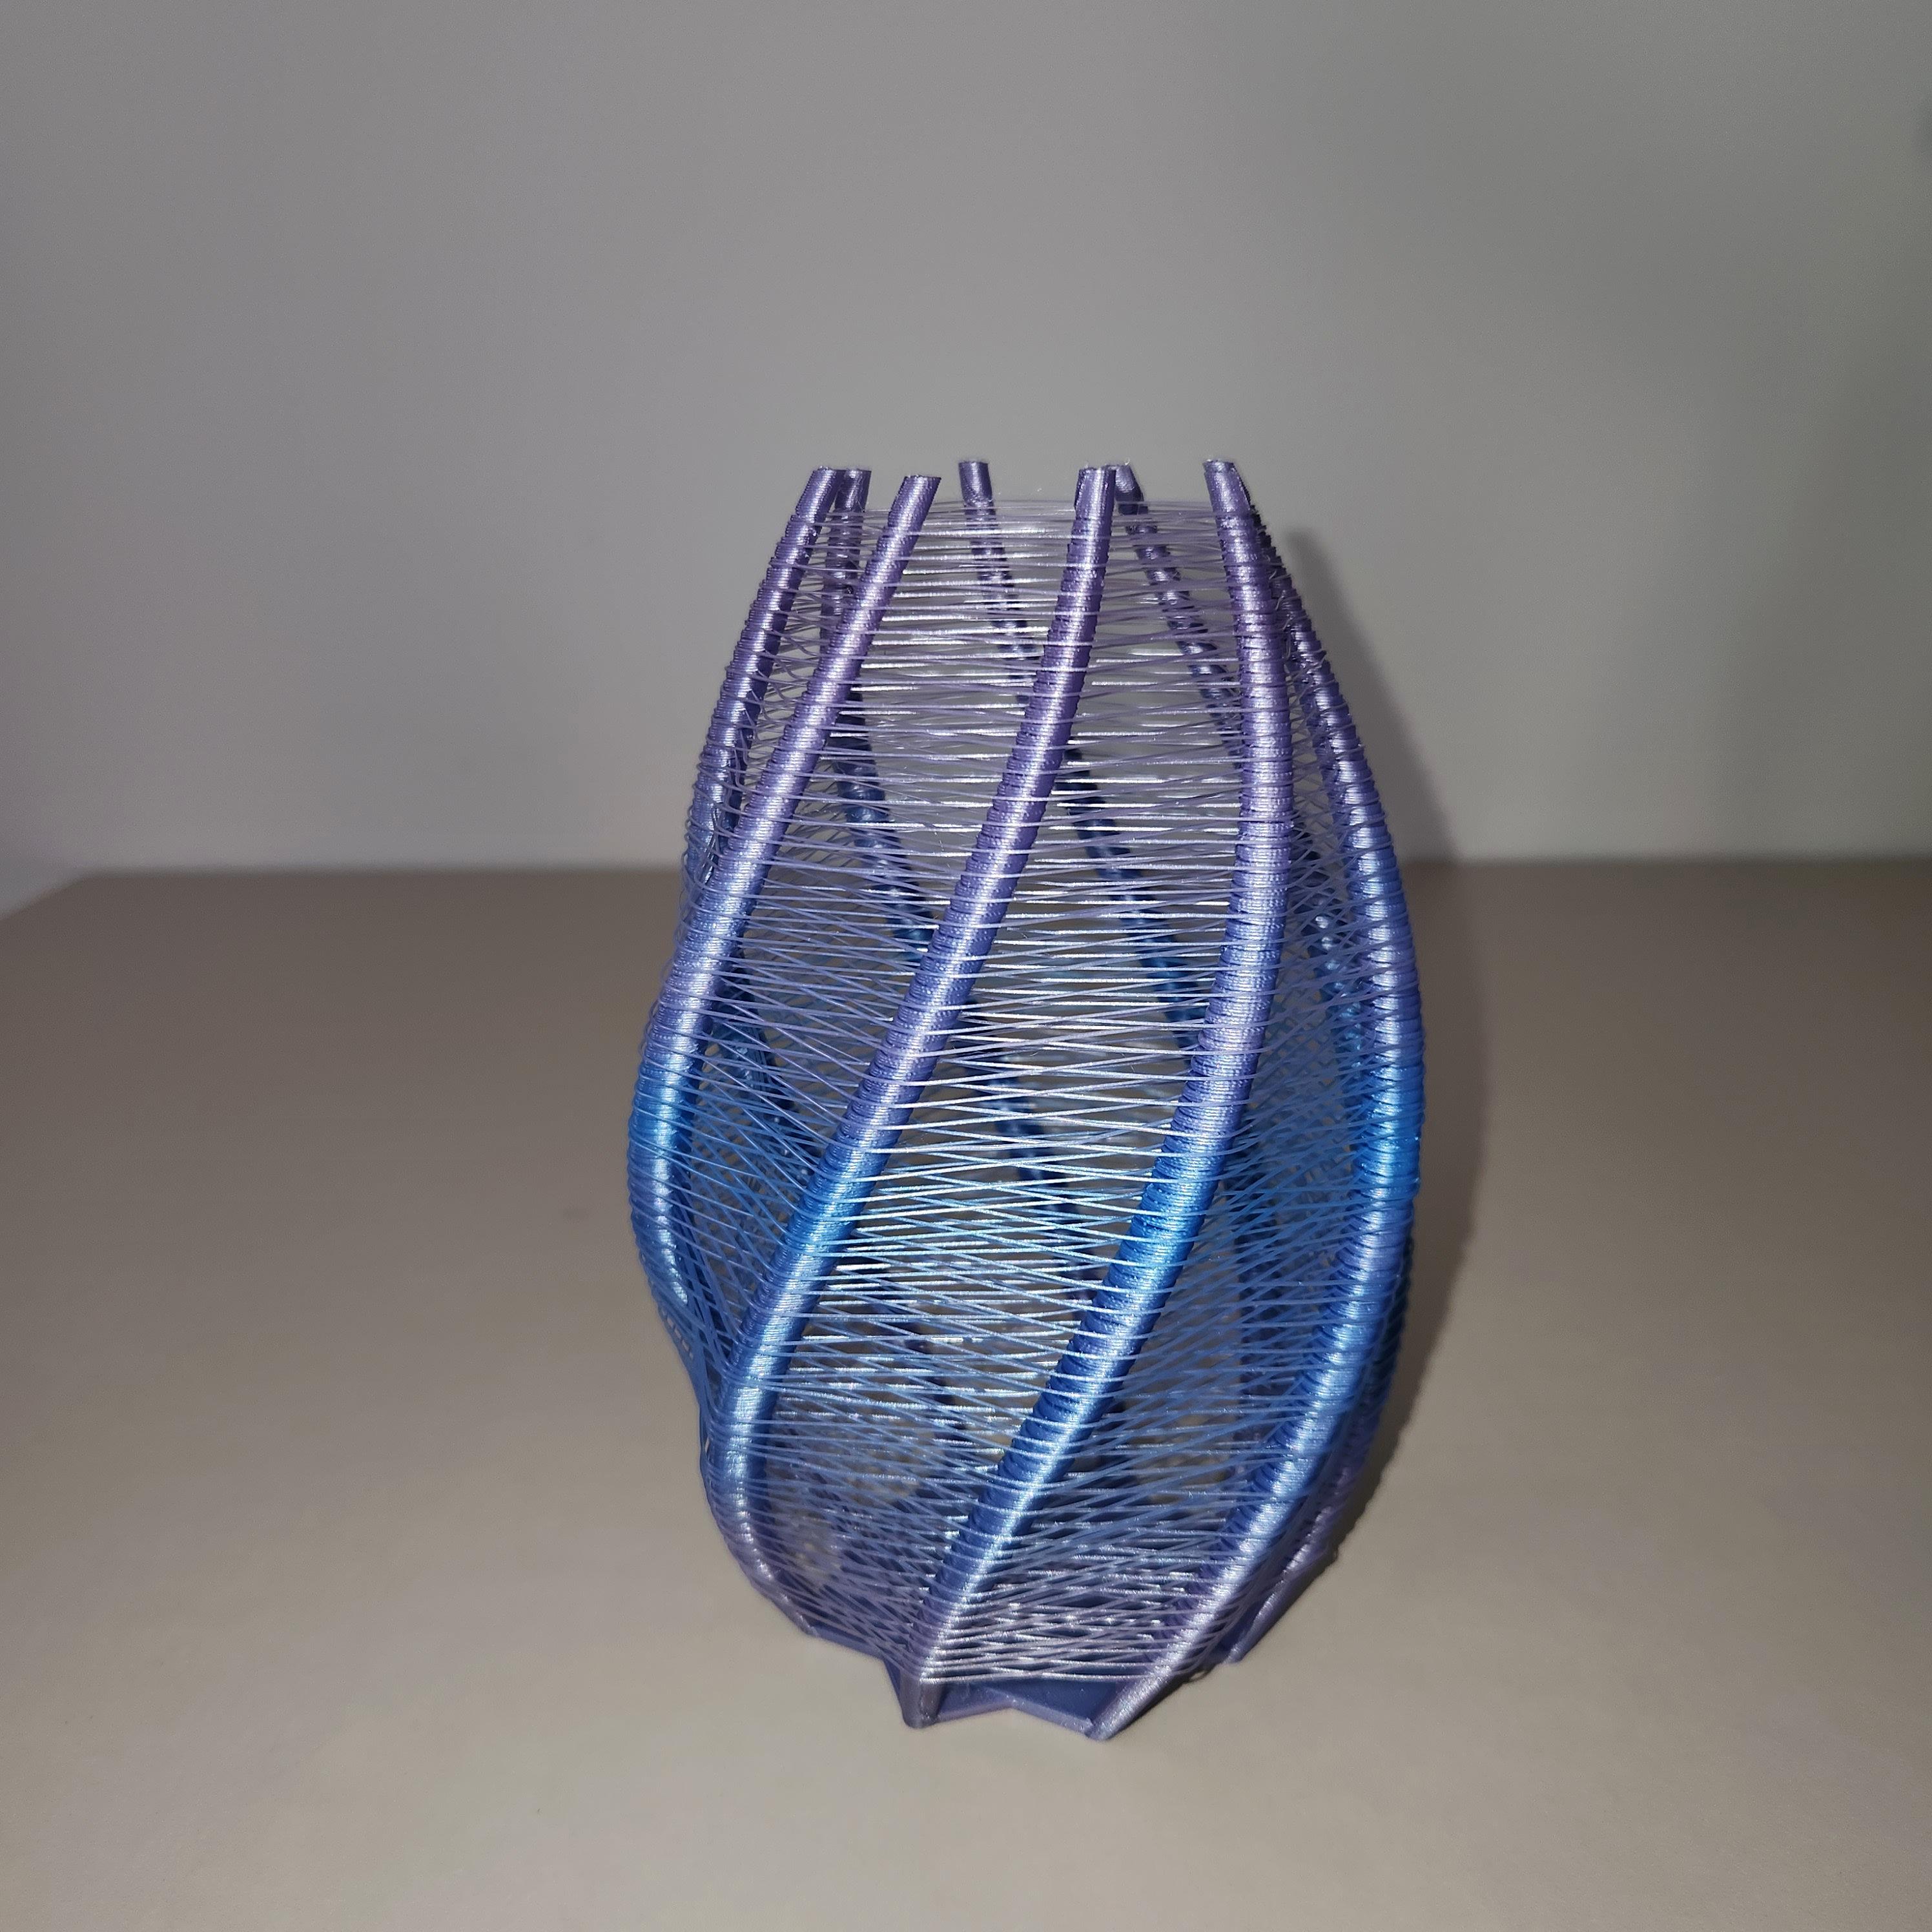 Woven String Vase 2 3d model